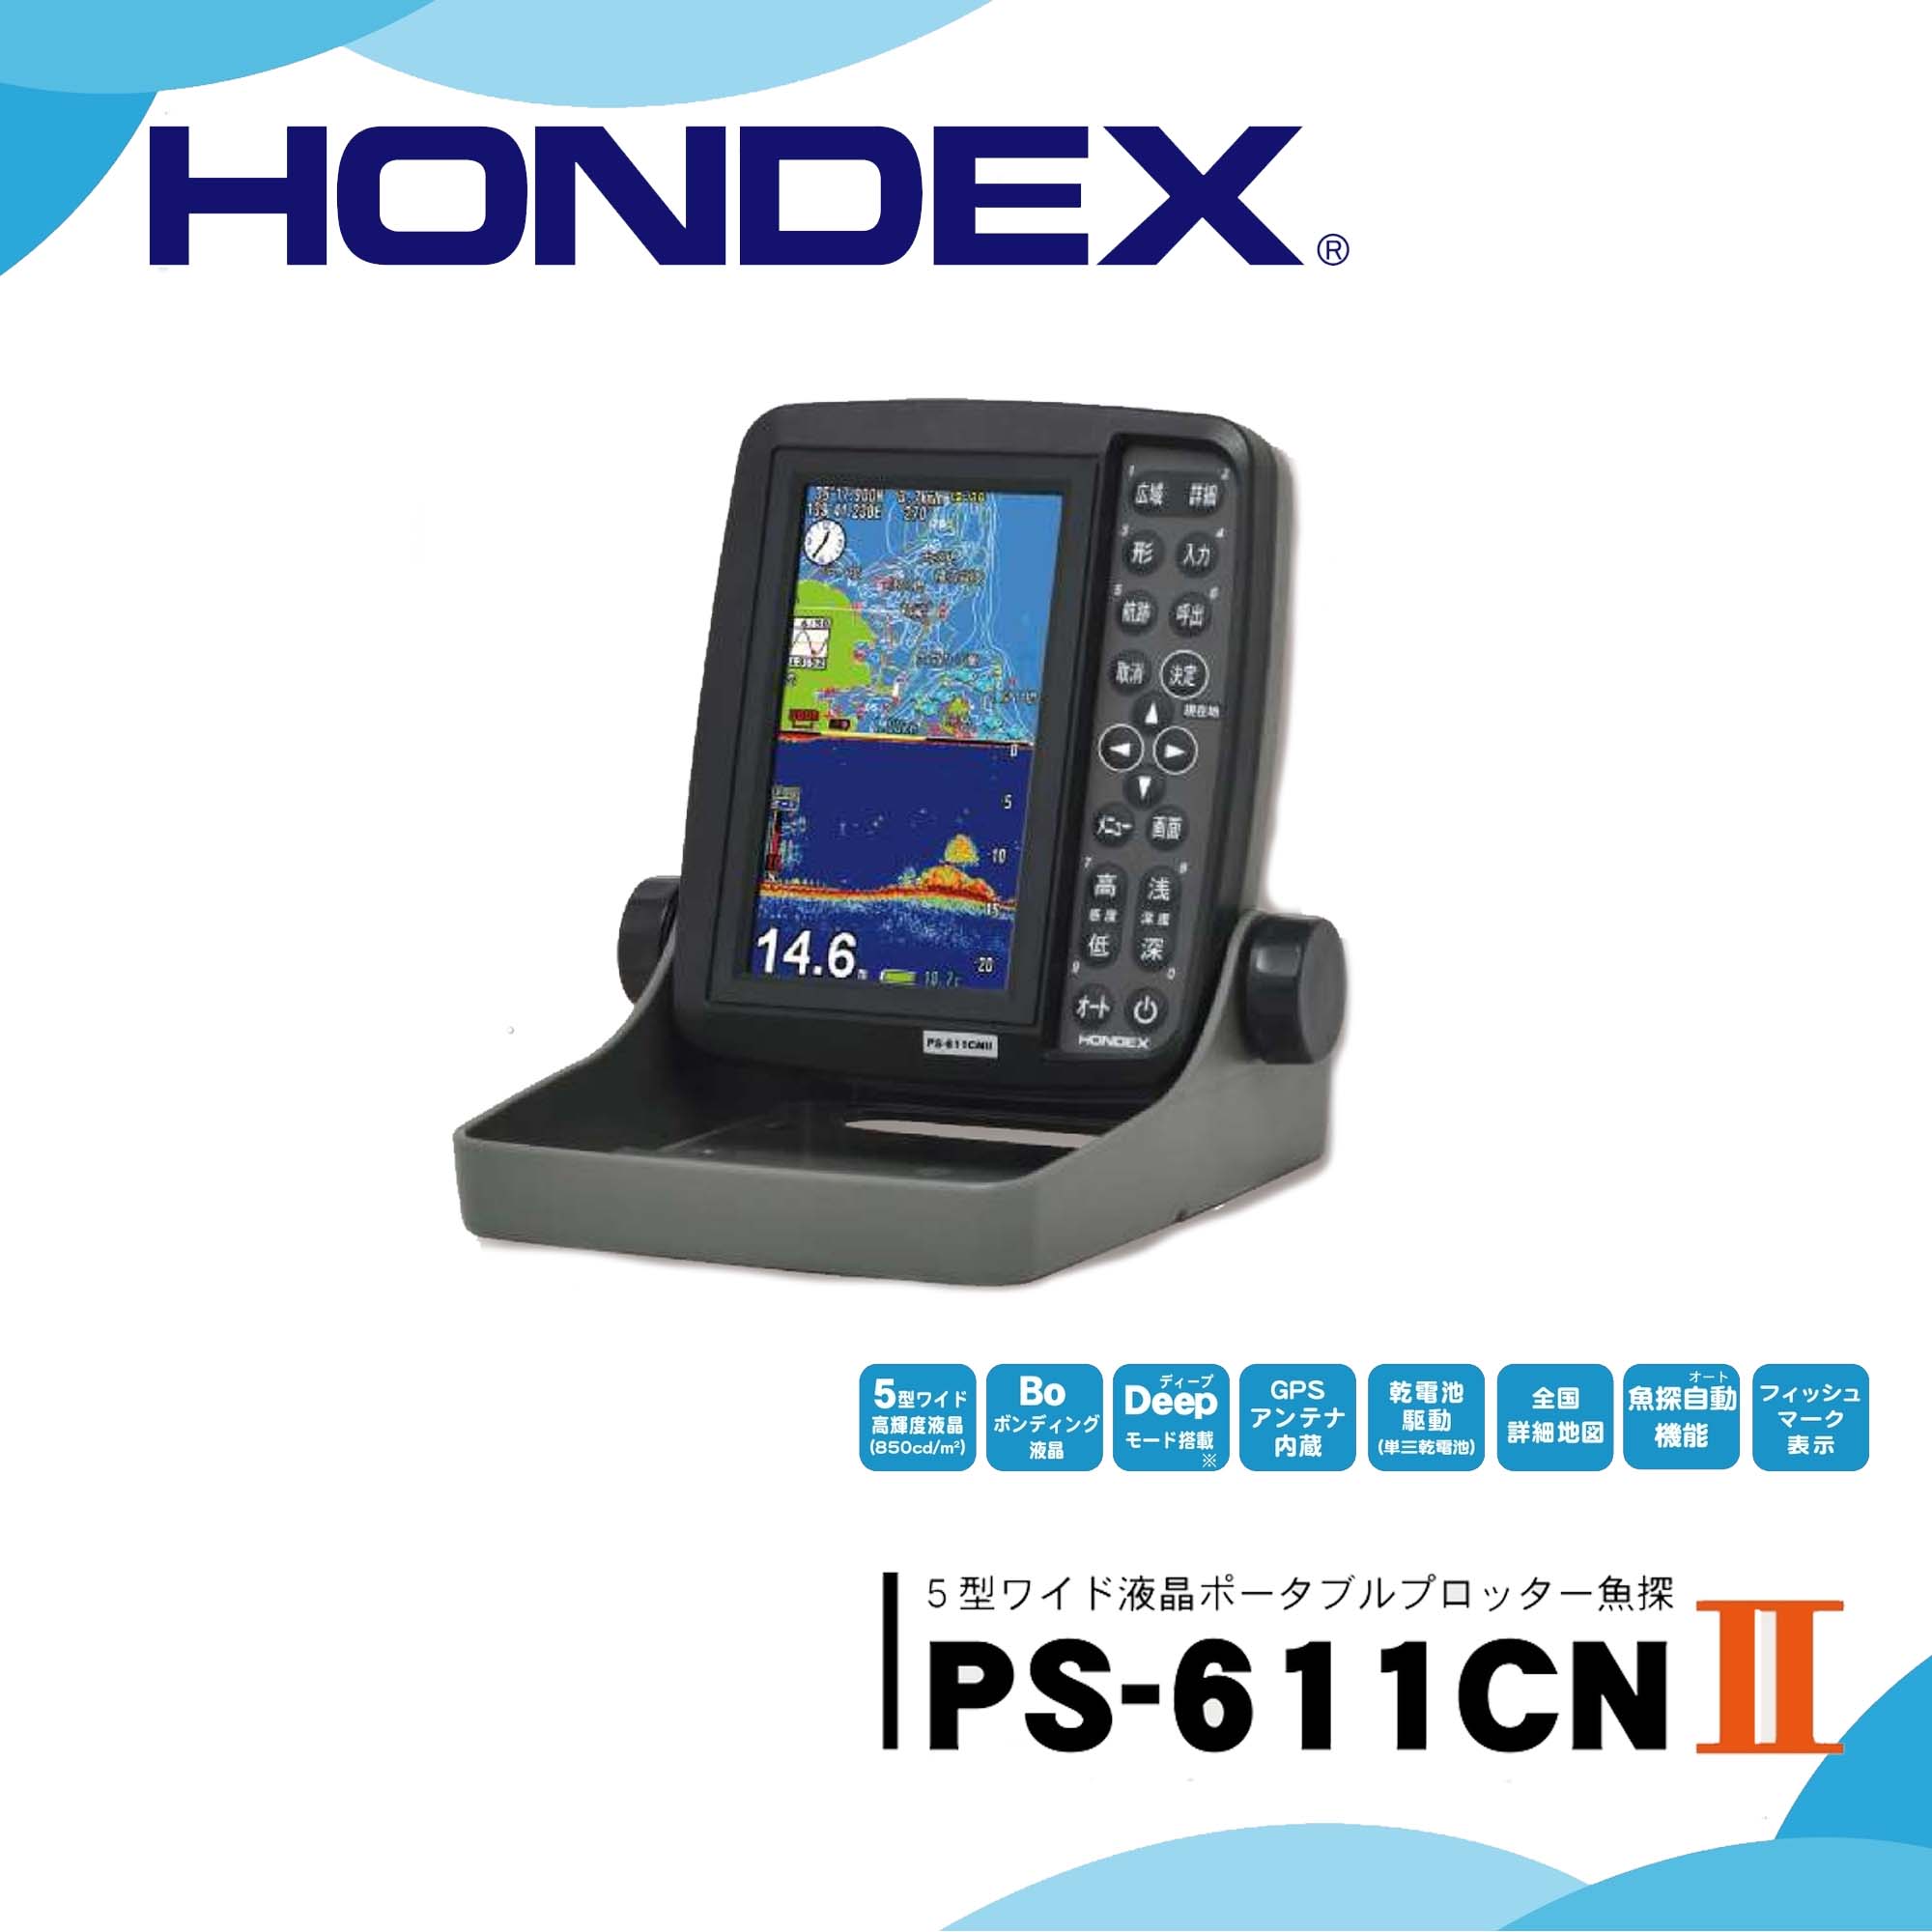 営業 PS-611CNII 3.3Ah BMOバッテリーセット HONDEX ホンデックス 5型